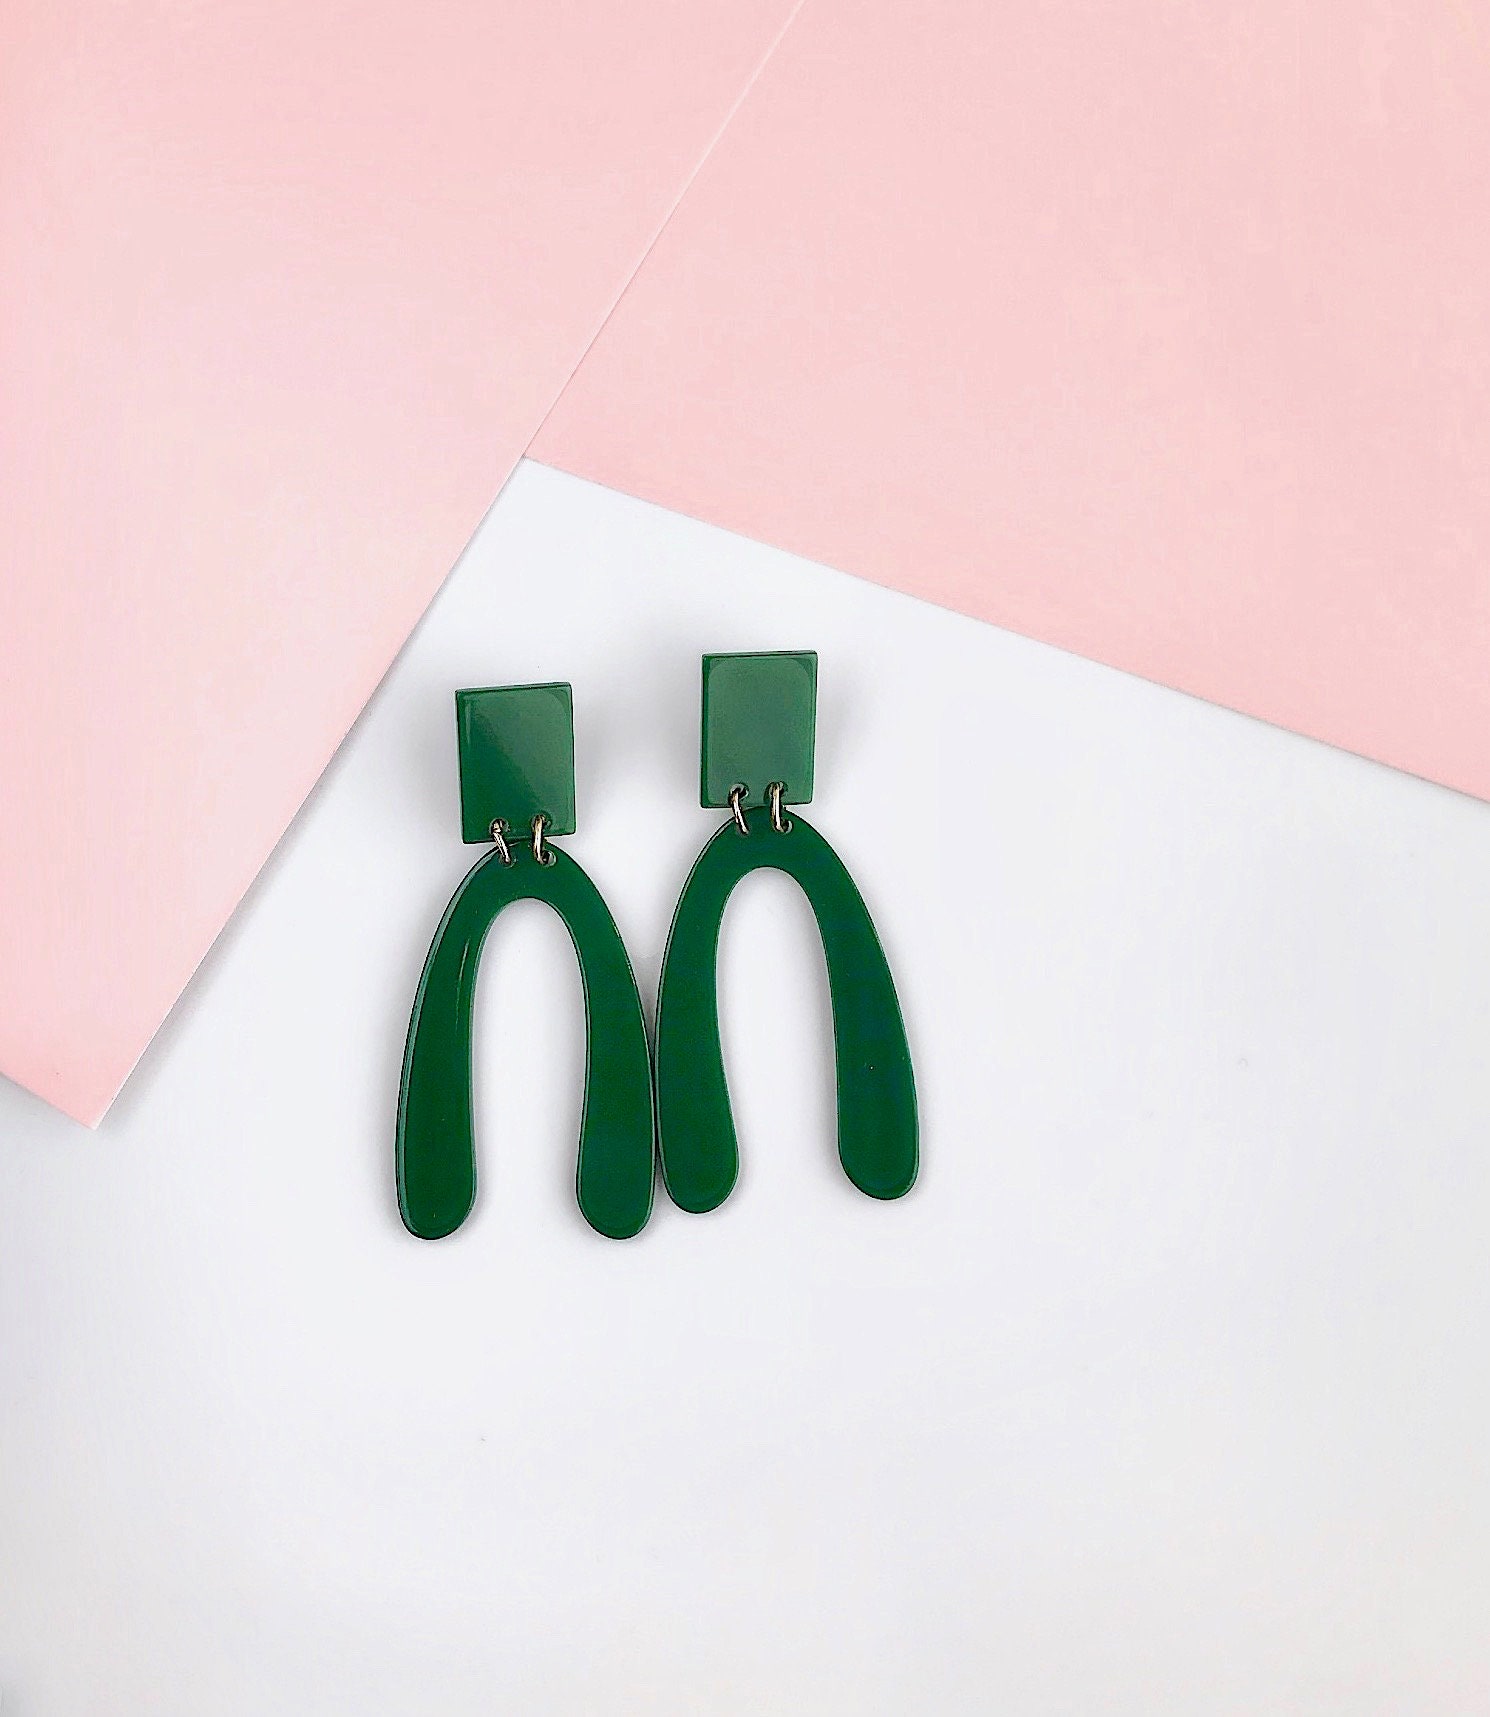 Green Acrylic Arch Earrings Geometric Earrings Green Resin - Etsy